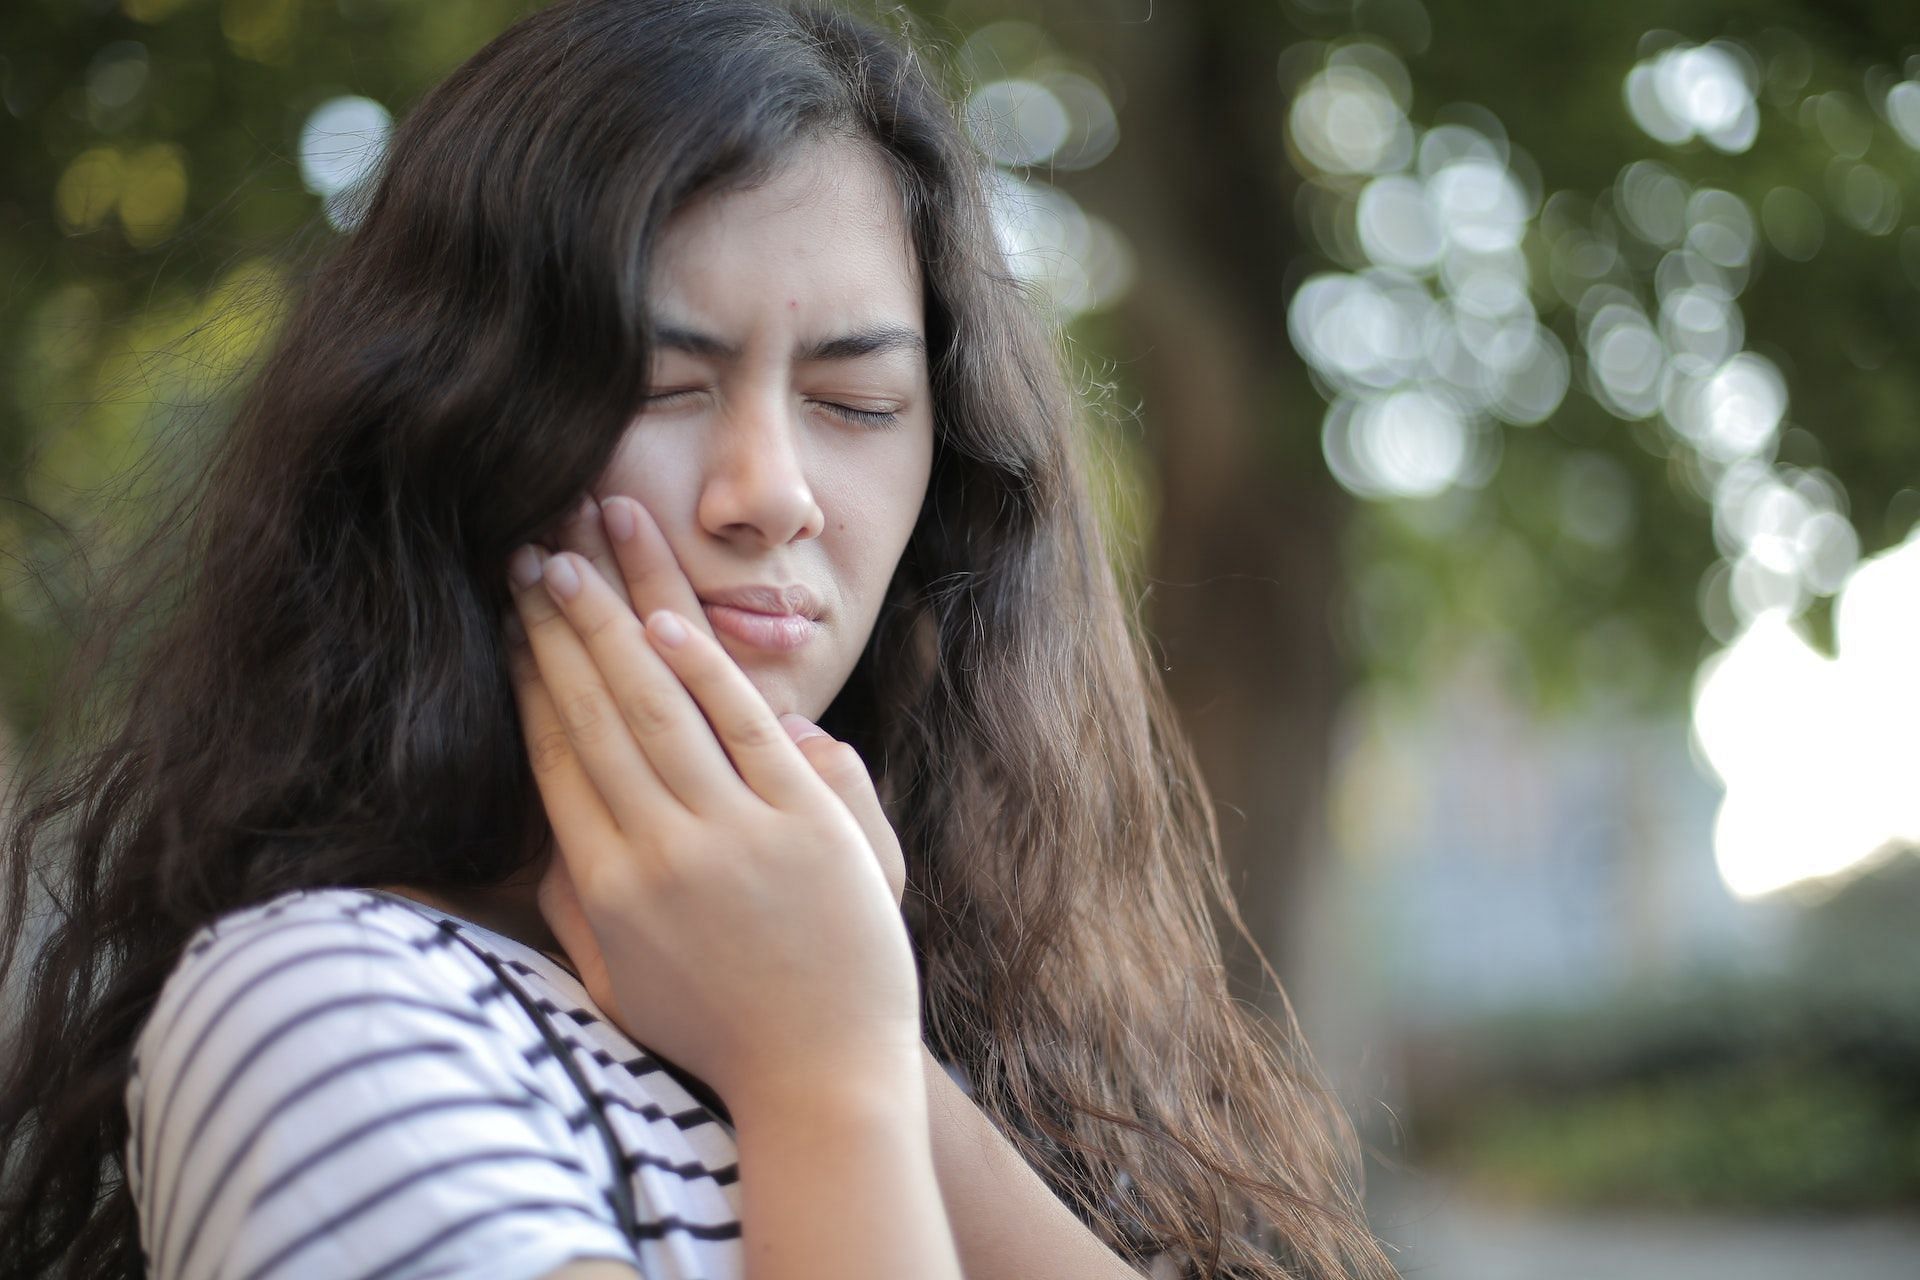 Symptoms of fibromyalgia include face and jaw pain. (Photo via Pexels/Andrea Piacquadio)